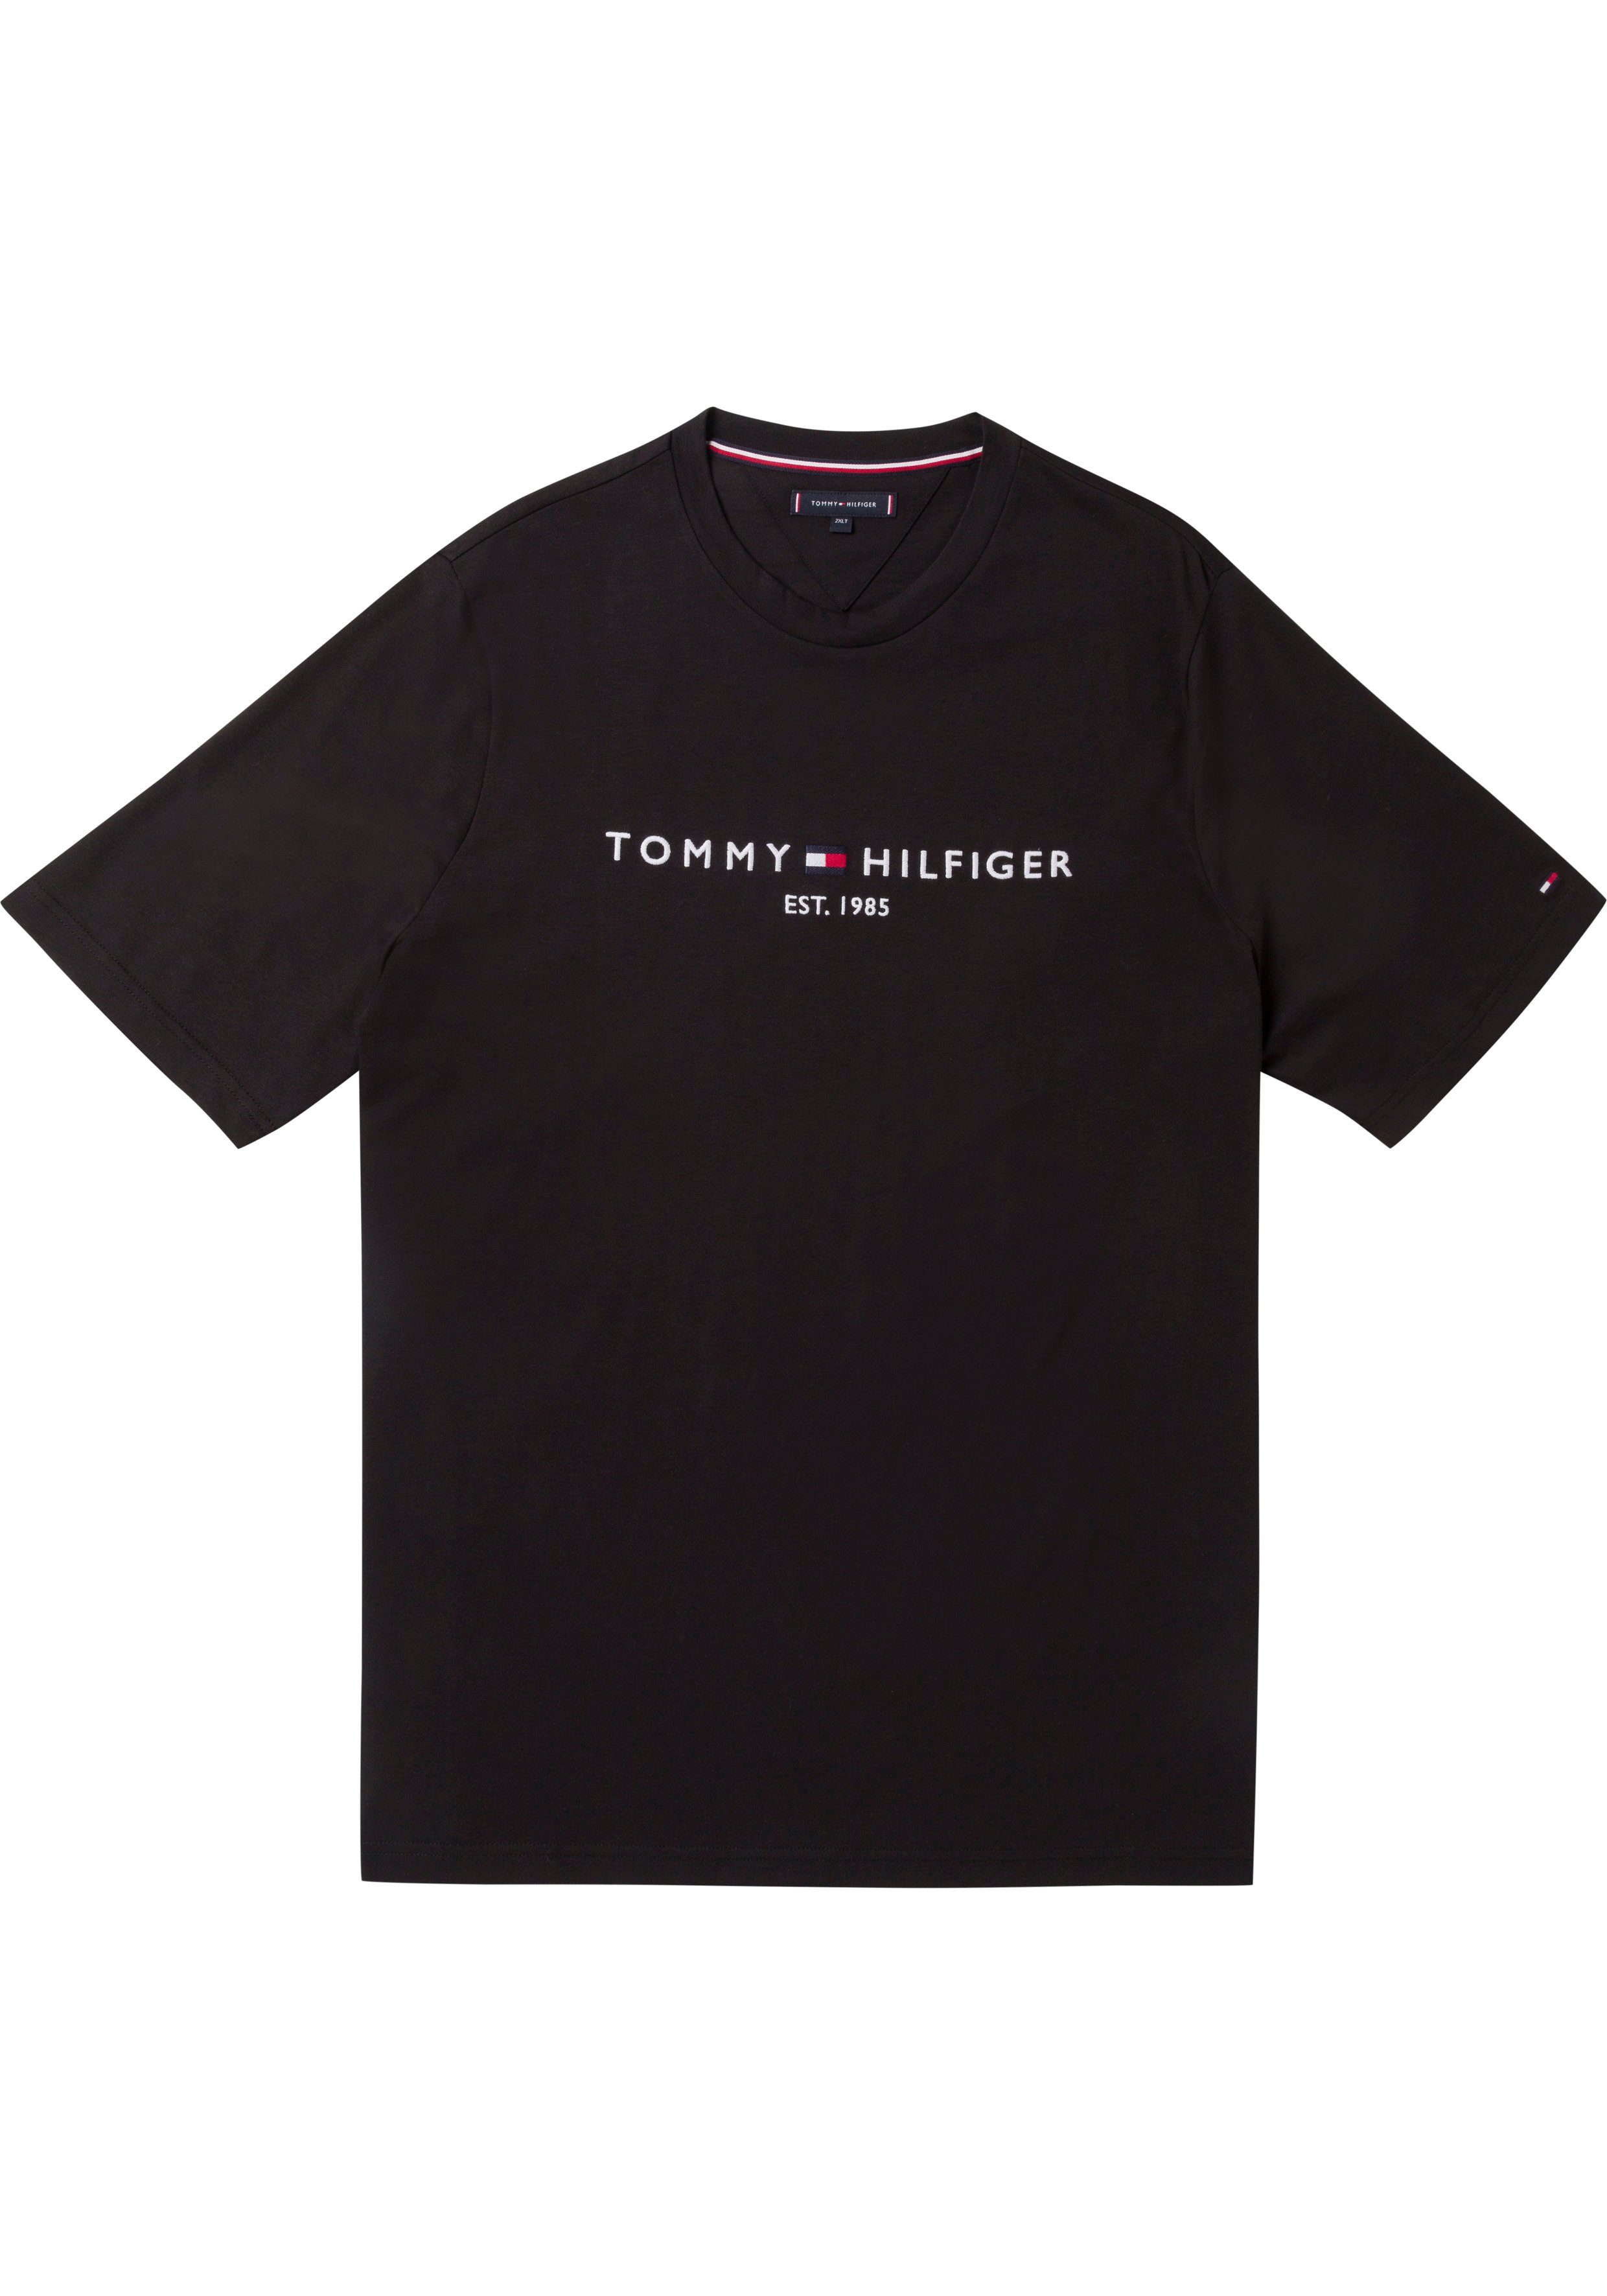 Tommy Hilfiger Big LOGO & Hilfiger T-Shirt auf BT-TOMMY schwarz Brust der Tommy Logoschriftzug TEE-B mit Tall